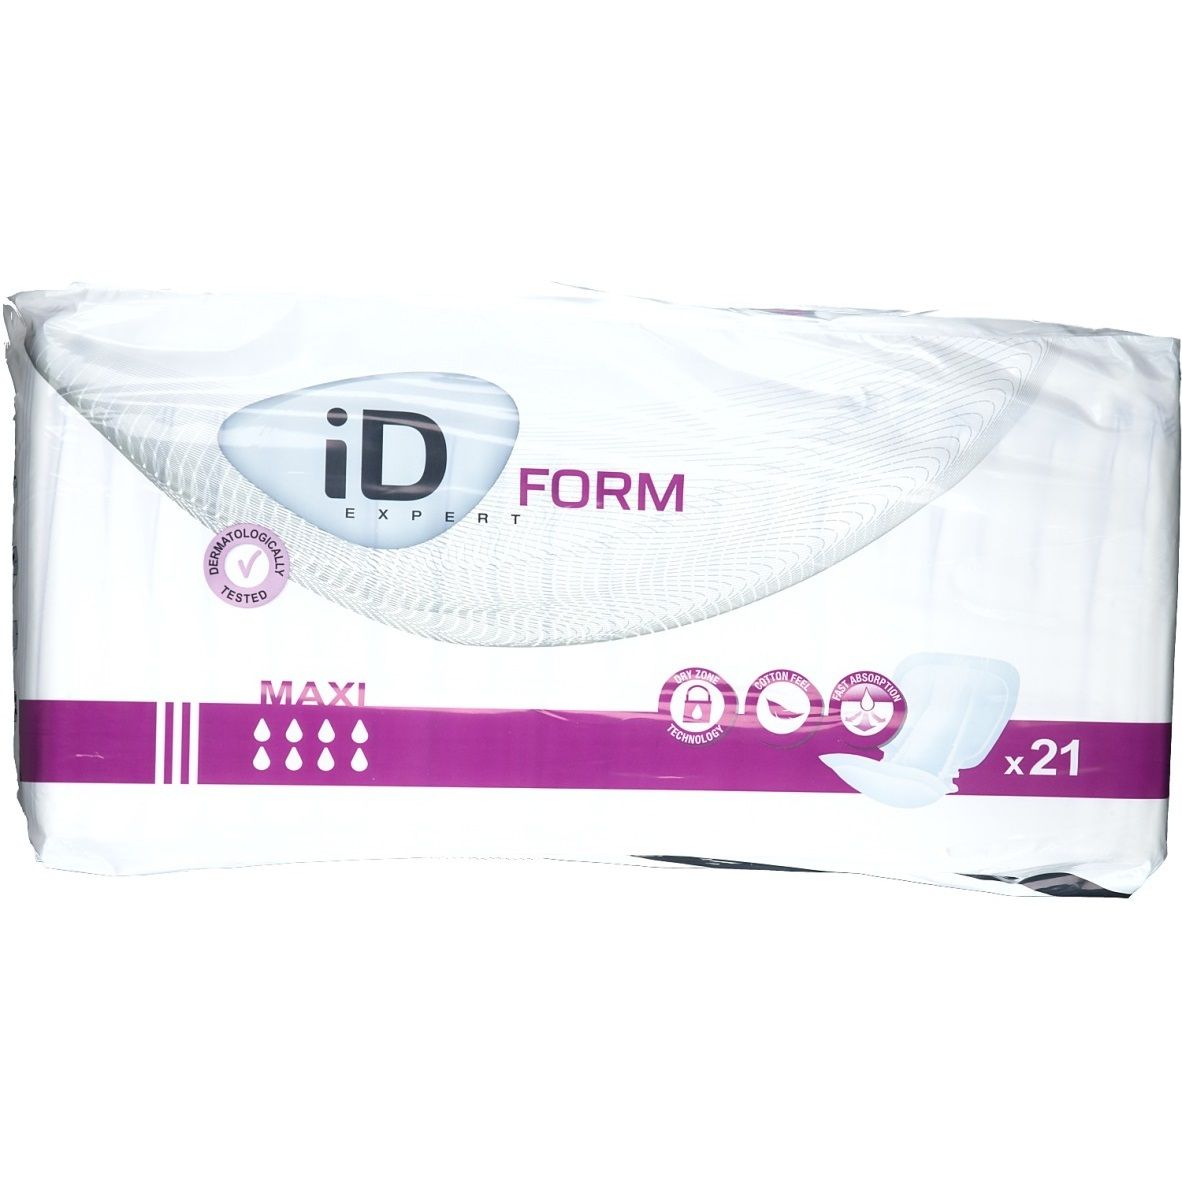 iD Expert Form Maxi